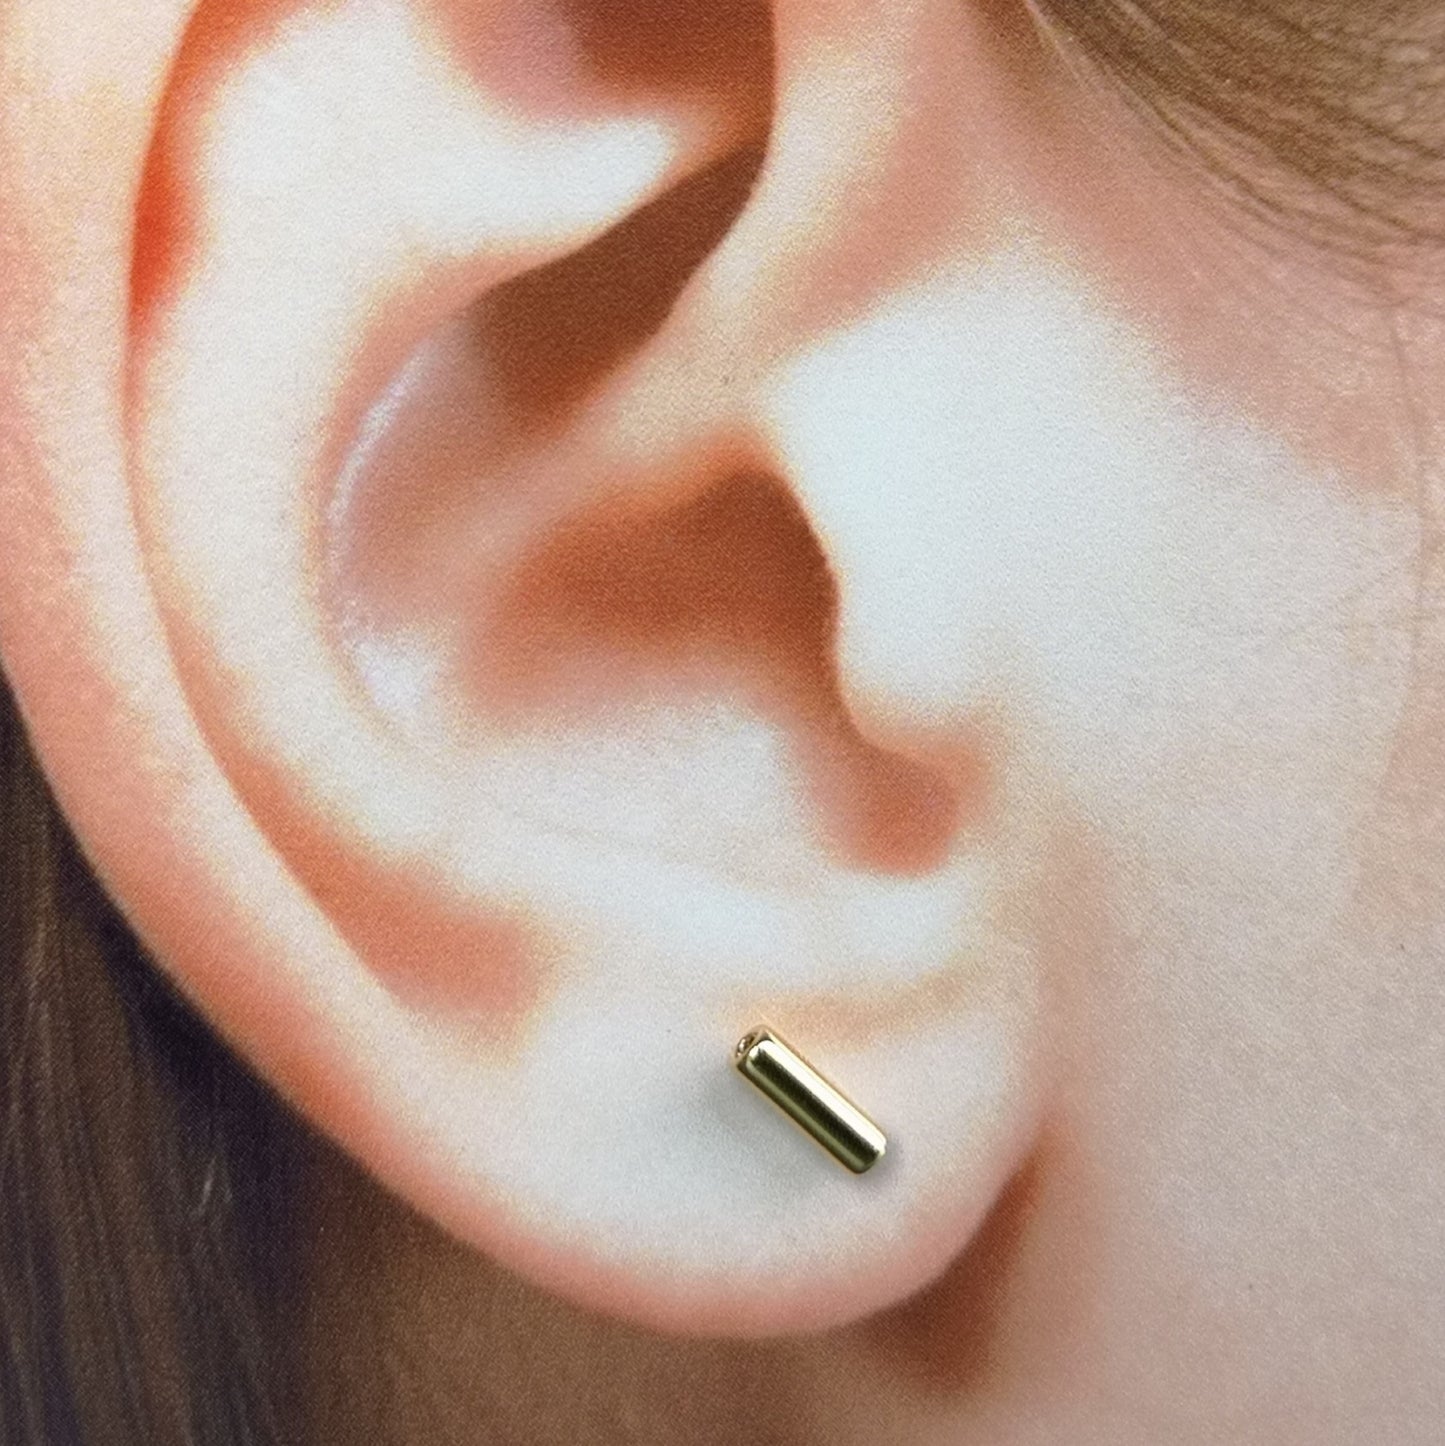 Pytte, 4 mm stick earrings